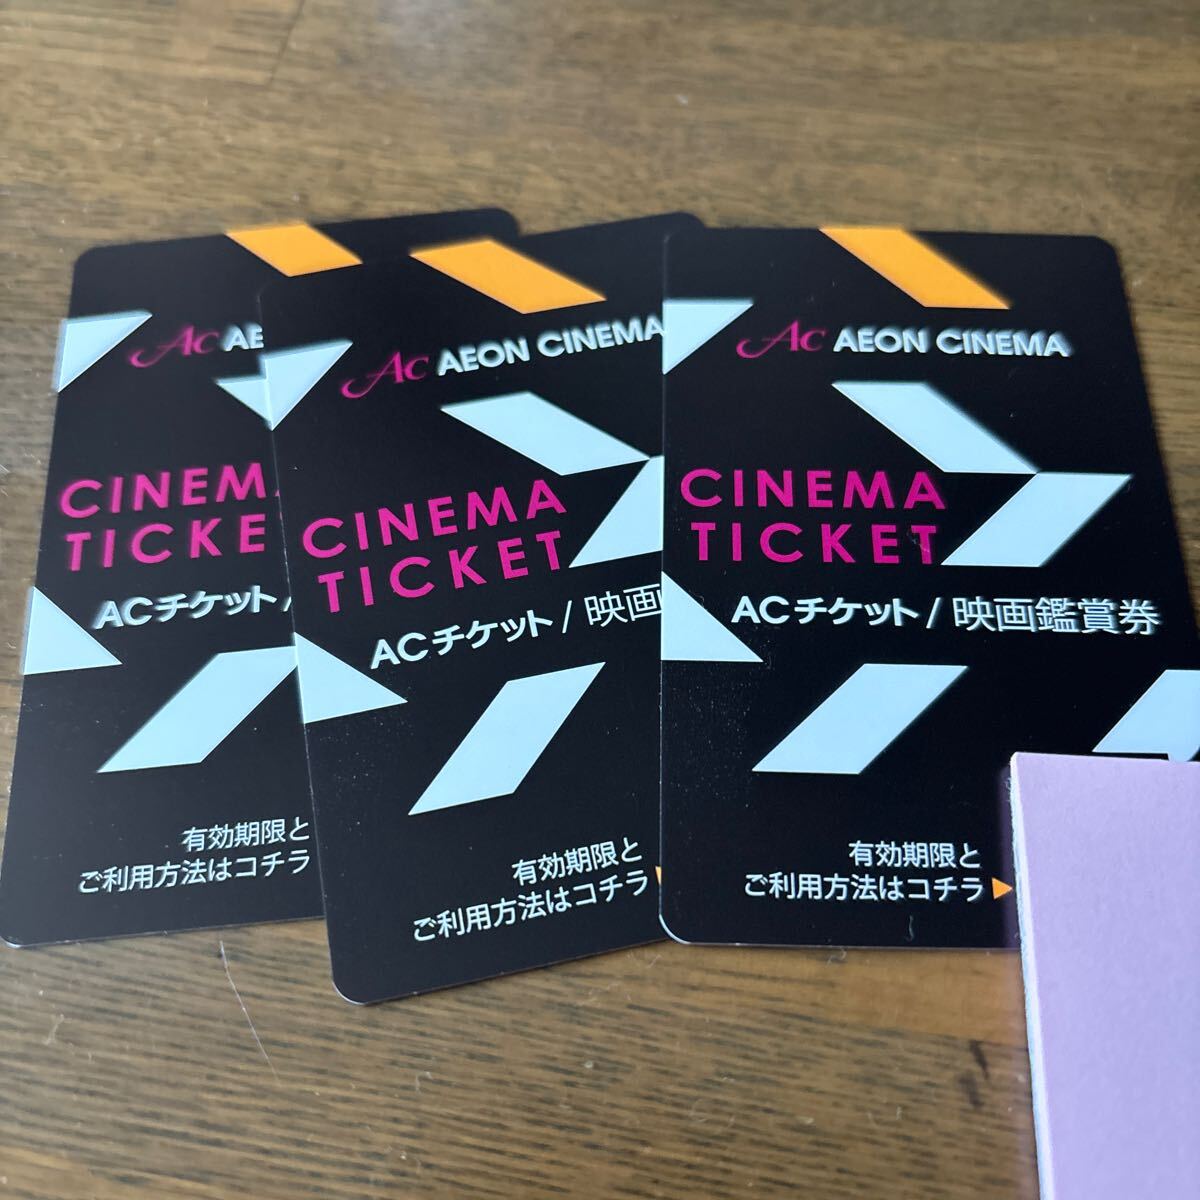  ion sinemaAC ticket movie appreciation ticket 3 sheets 